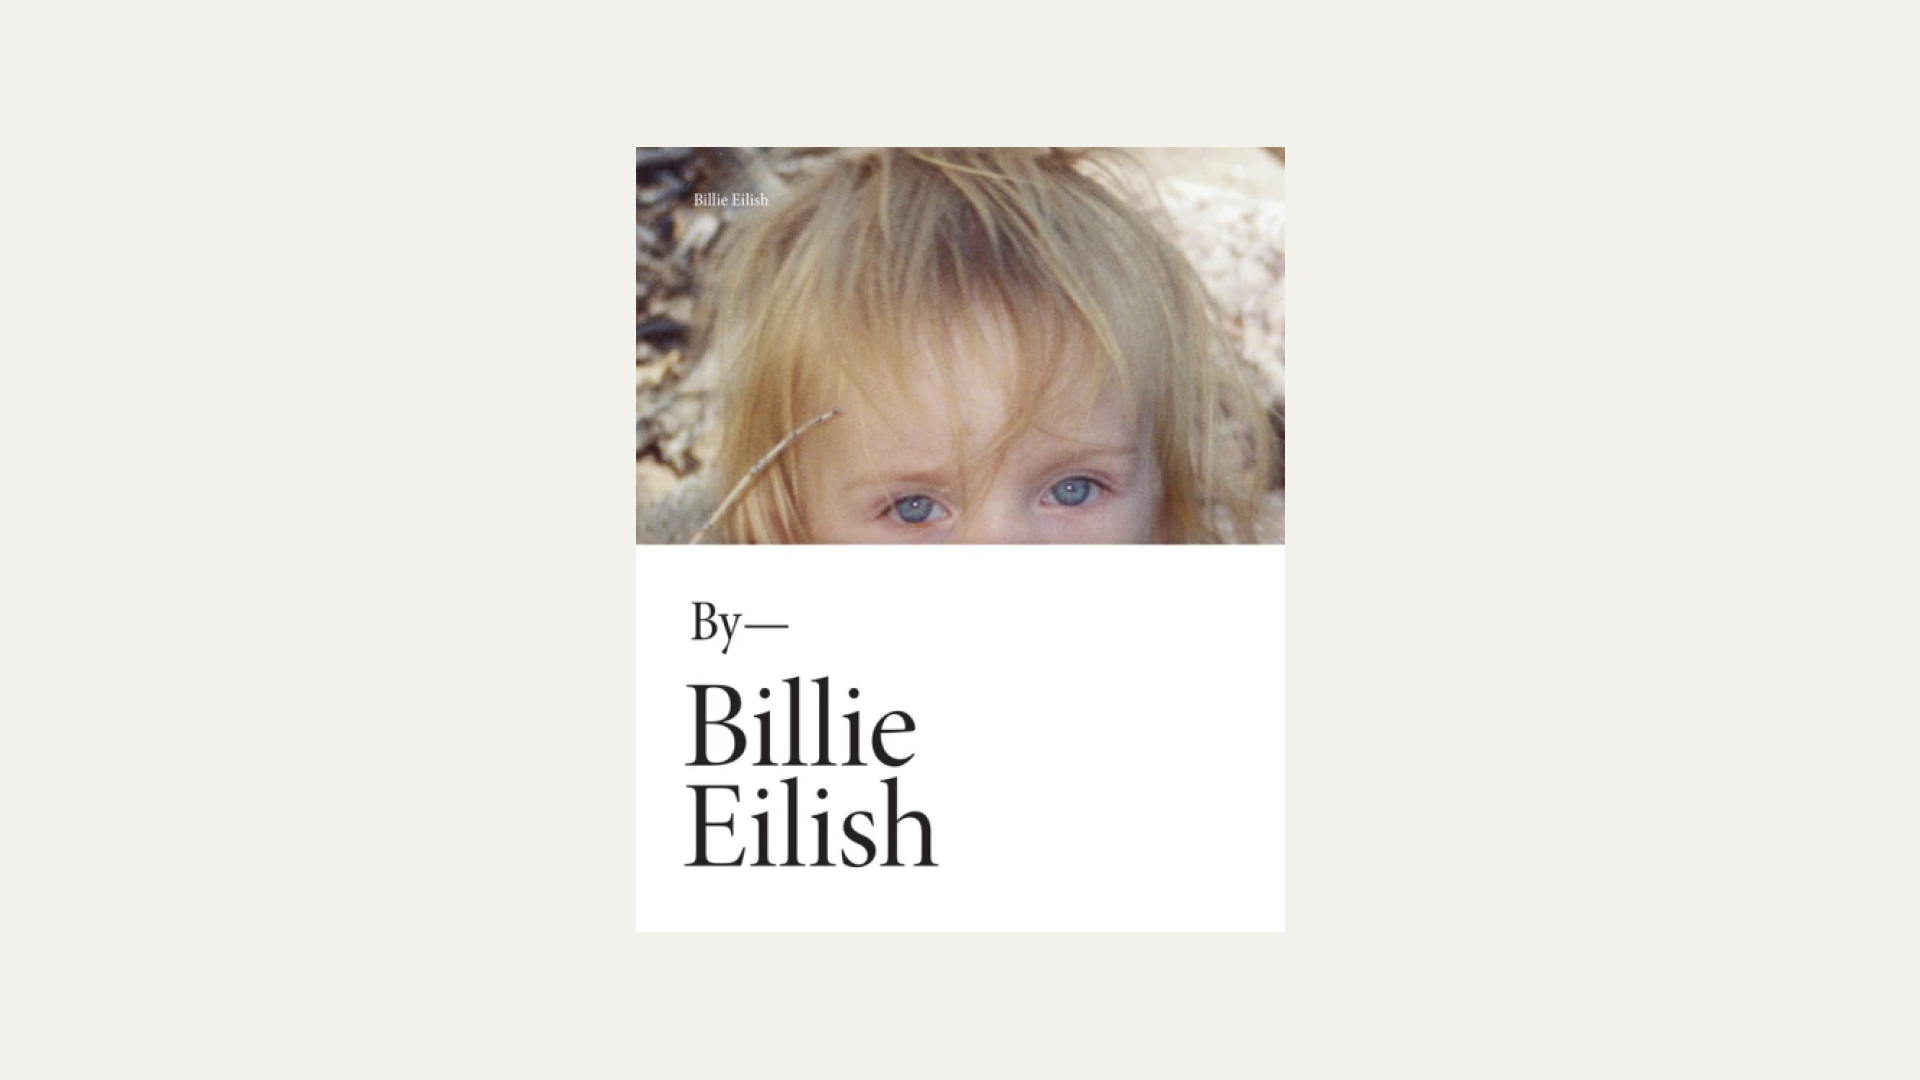 “Billie Eilish” by Billie Eilish